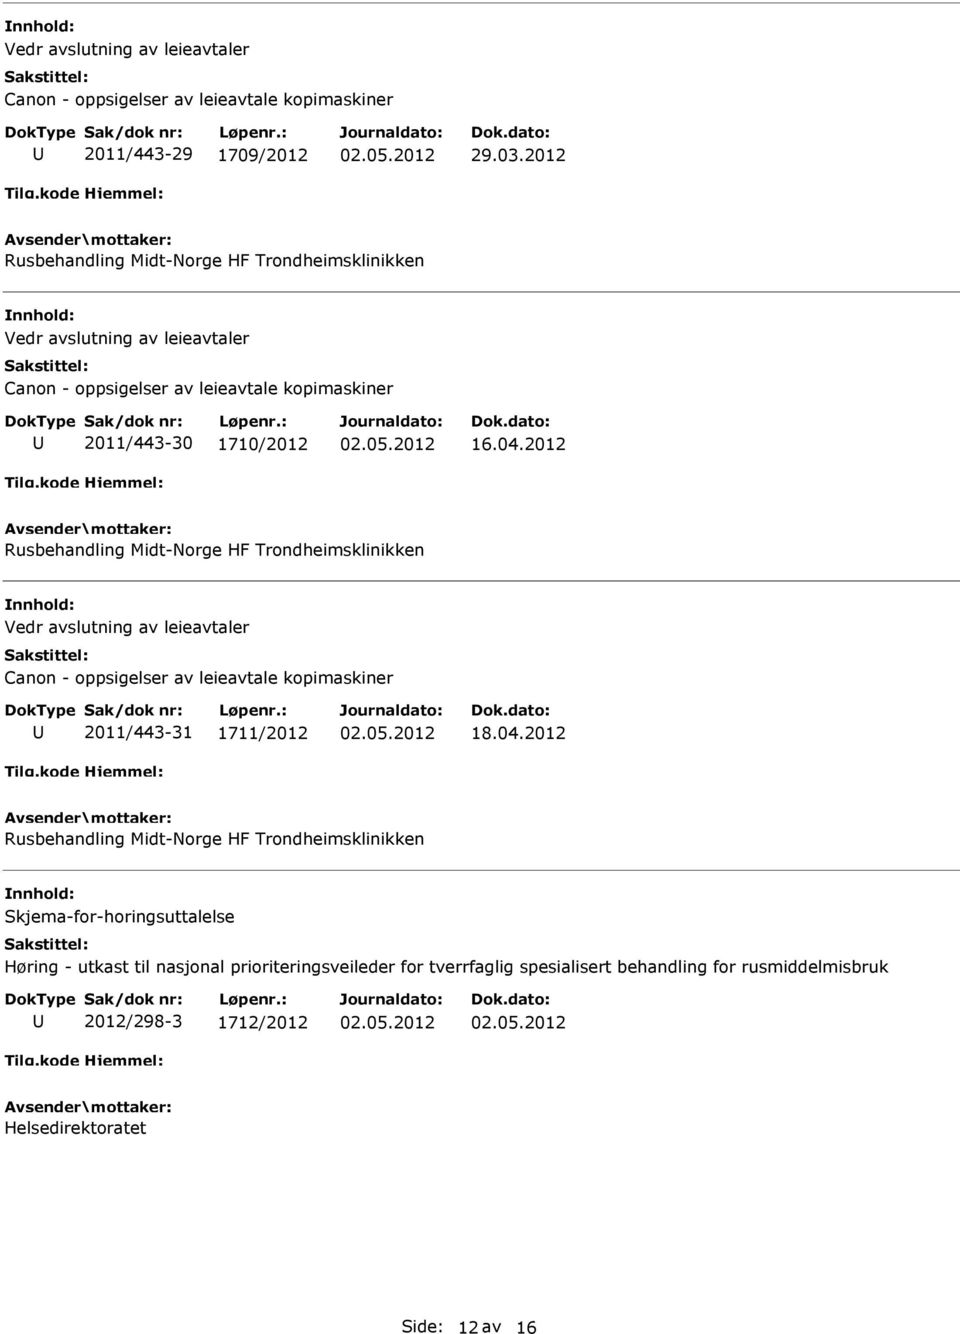 2012 Rusbehandling Midt-Norge HF Trondheimsklinikken Skjema-for-horingsuttalelse Høring - utkast til